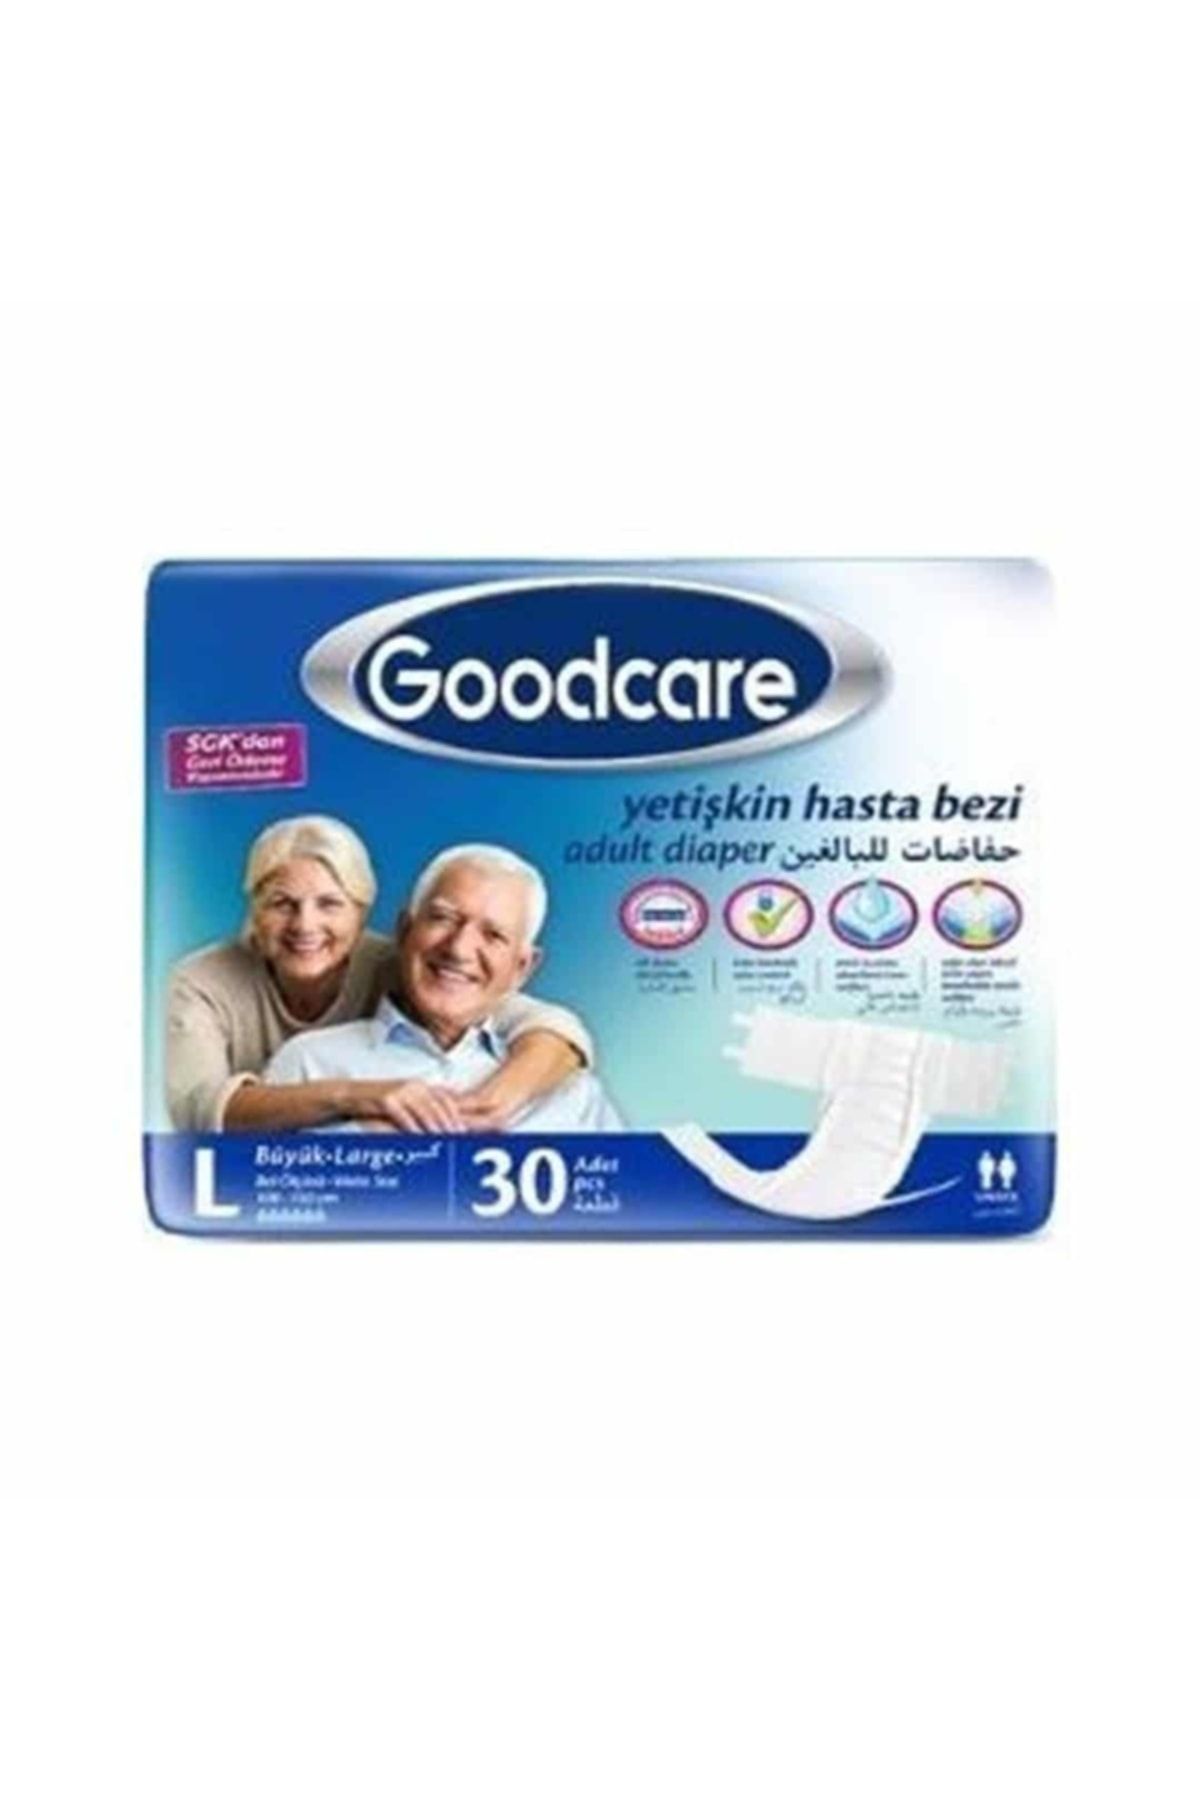 Goodcare Bel Bantlı Yetişkin Hasta Bezi Large 30'lu Paket